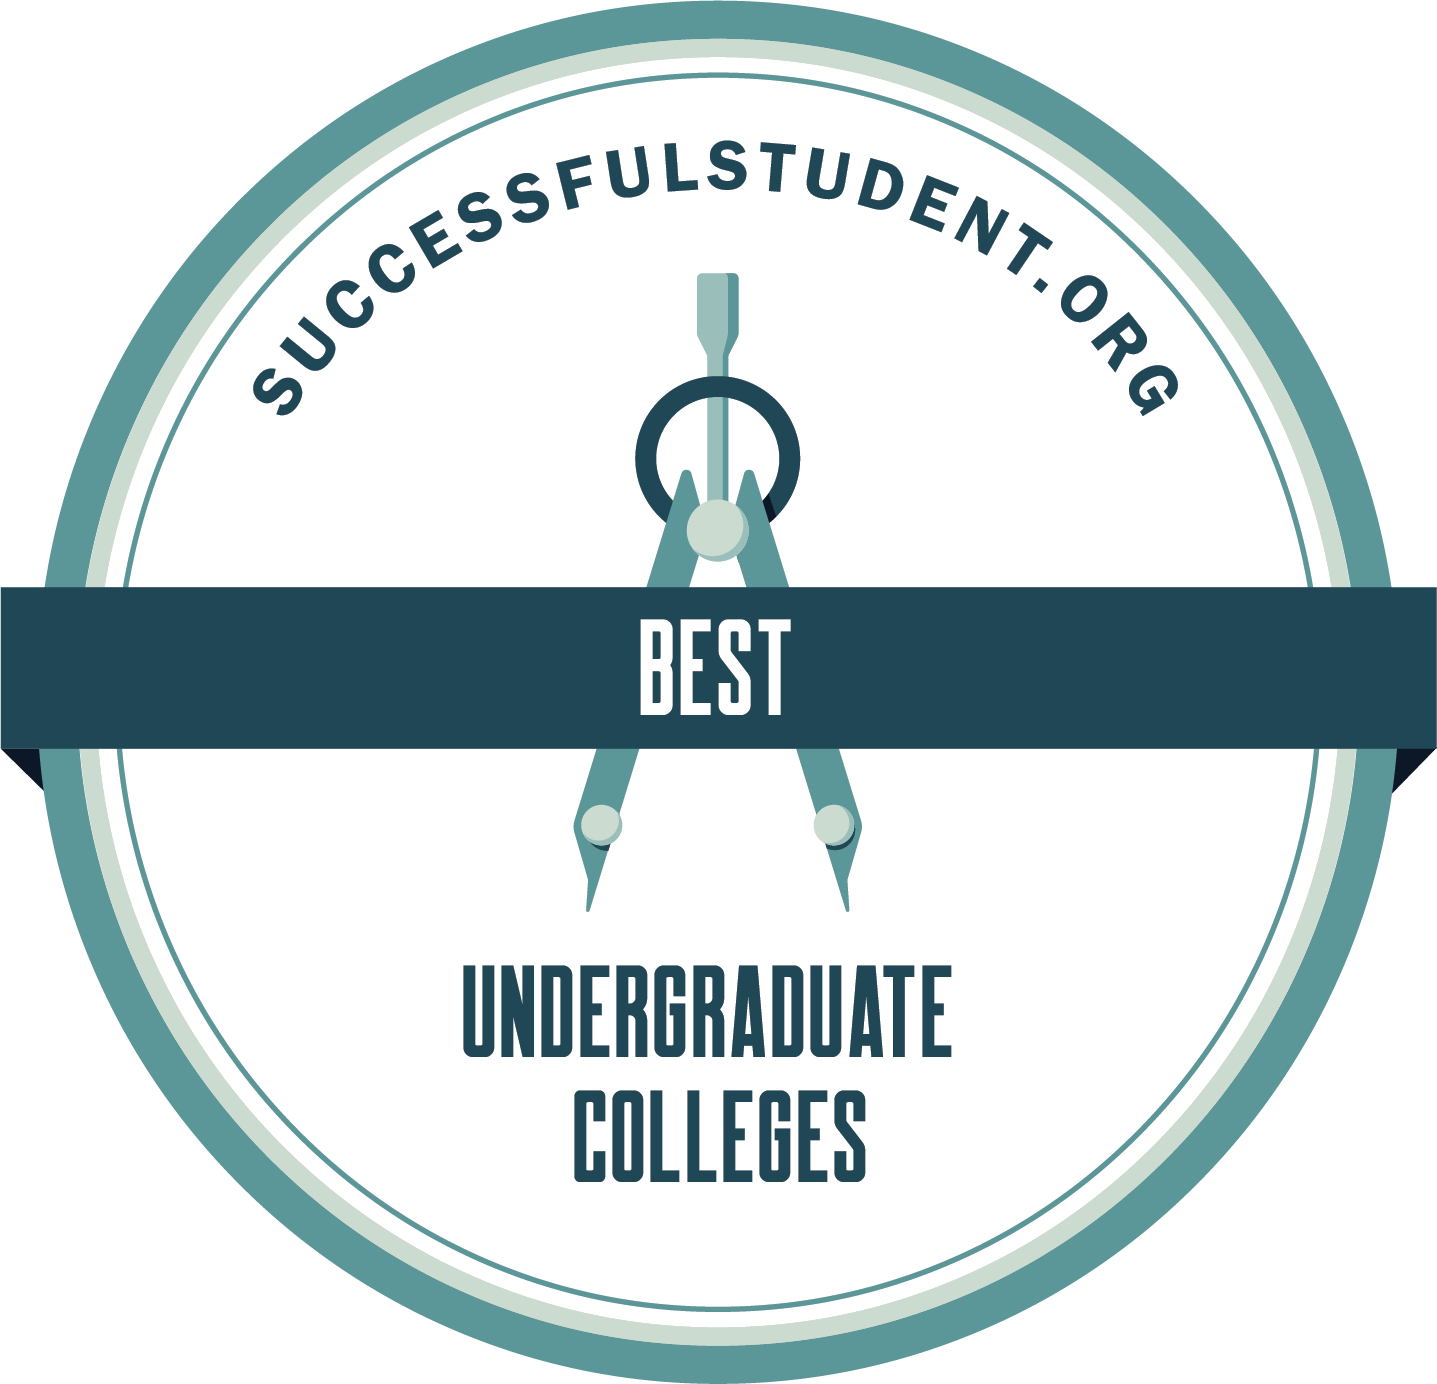 The 20 Best Undergraduate Colleges's Badge